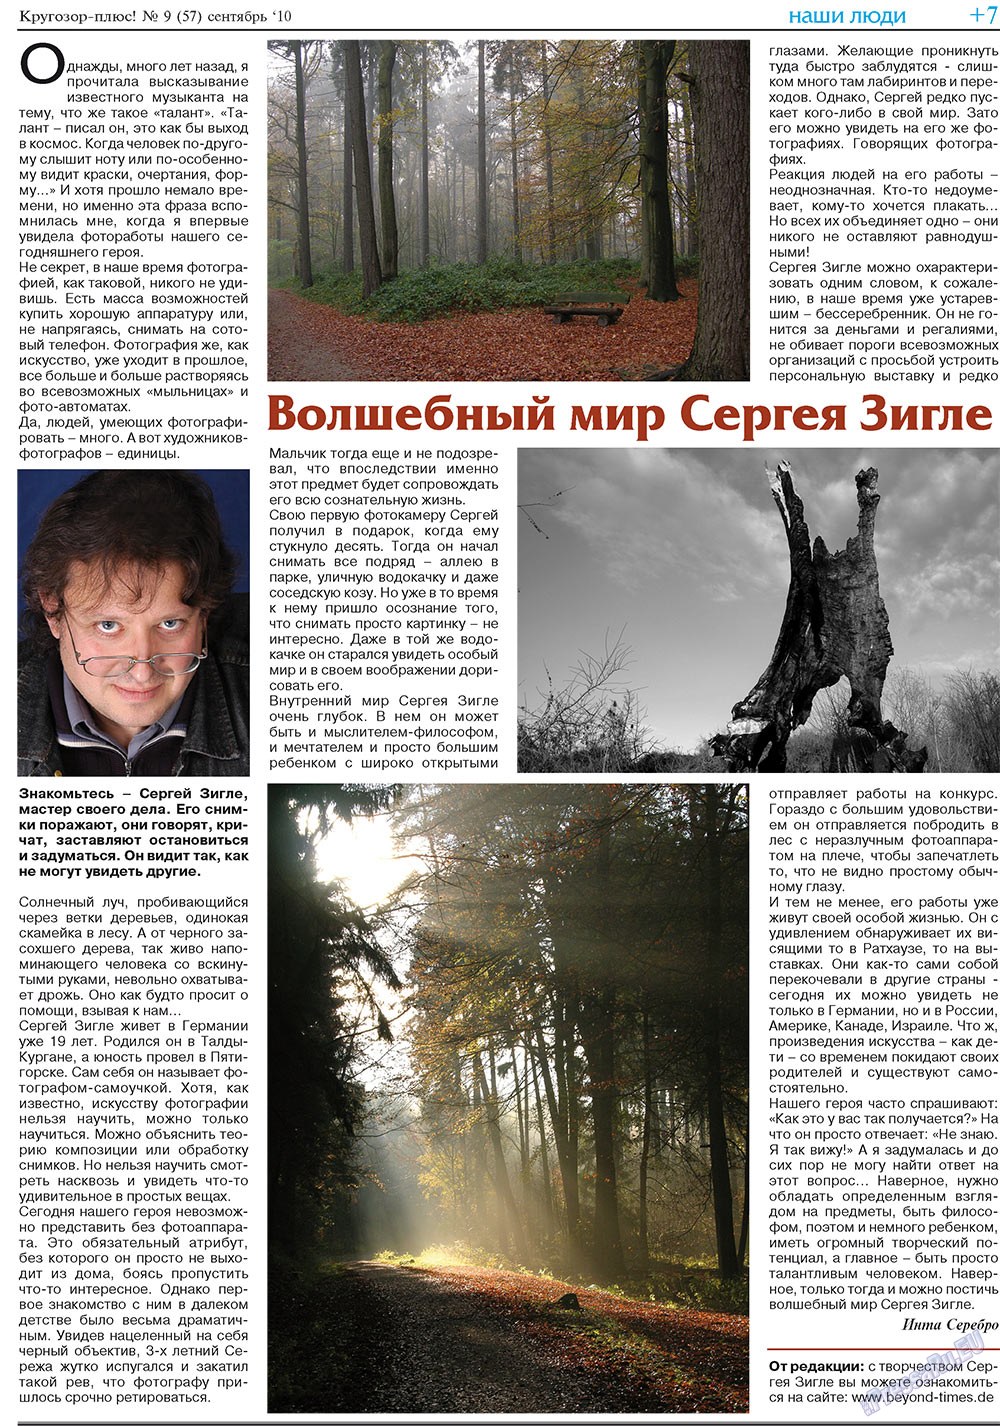 Кругозор плюс!, газета. 2010 №9 стр.23